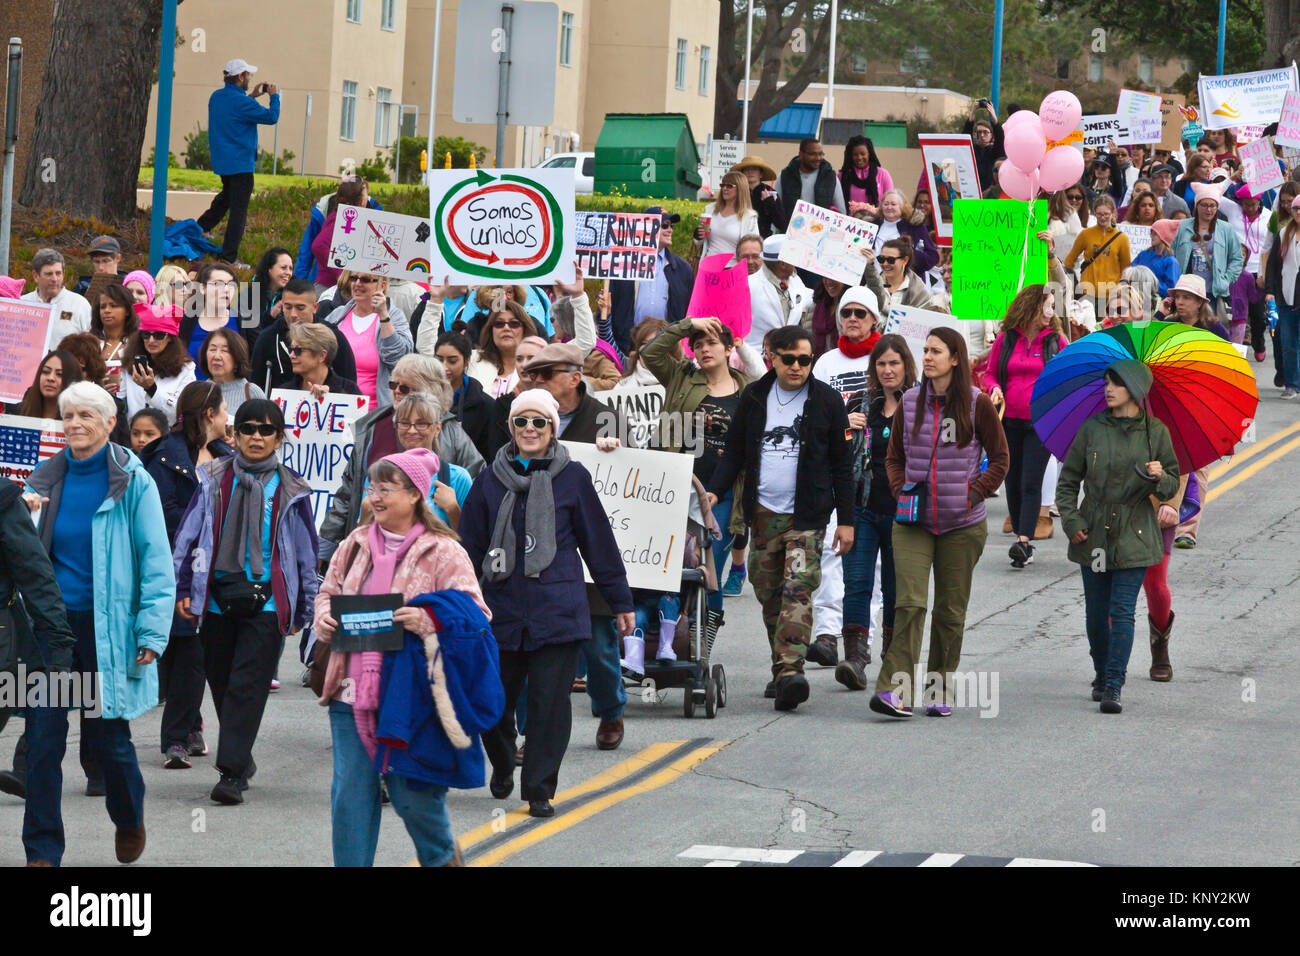 La Marche des femmes et la démonstration sur le campus de l'université, Monterey Bay le lendemain de l'atout de Donald est devenu président le 21 janvier 2017 - Monterey, Banque D'Images